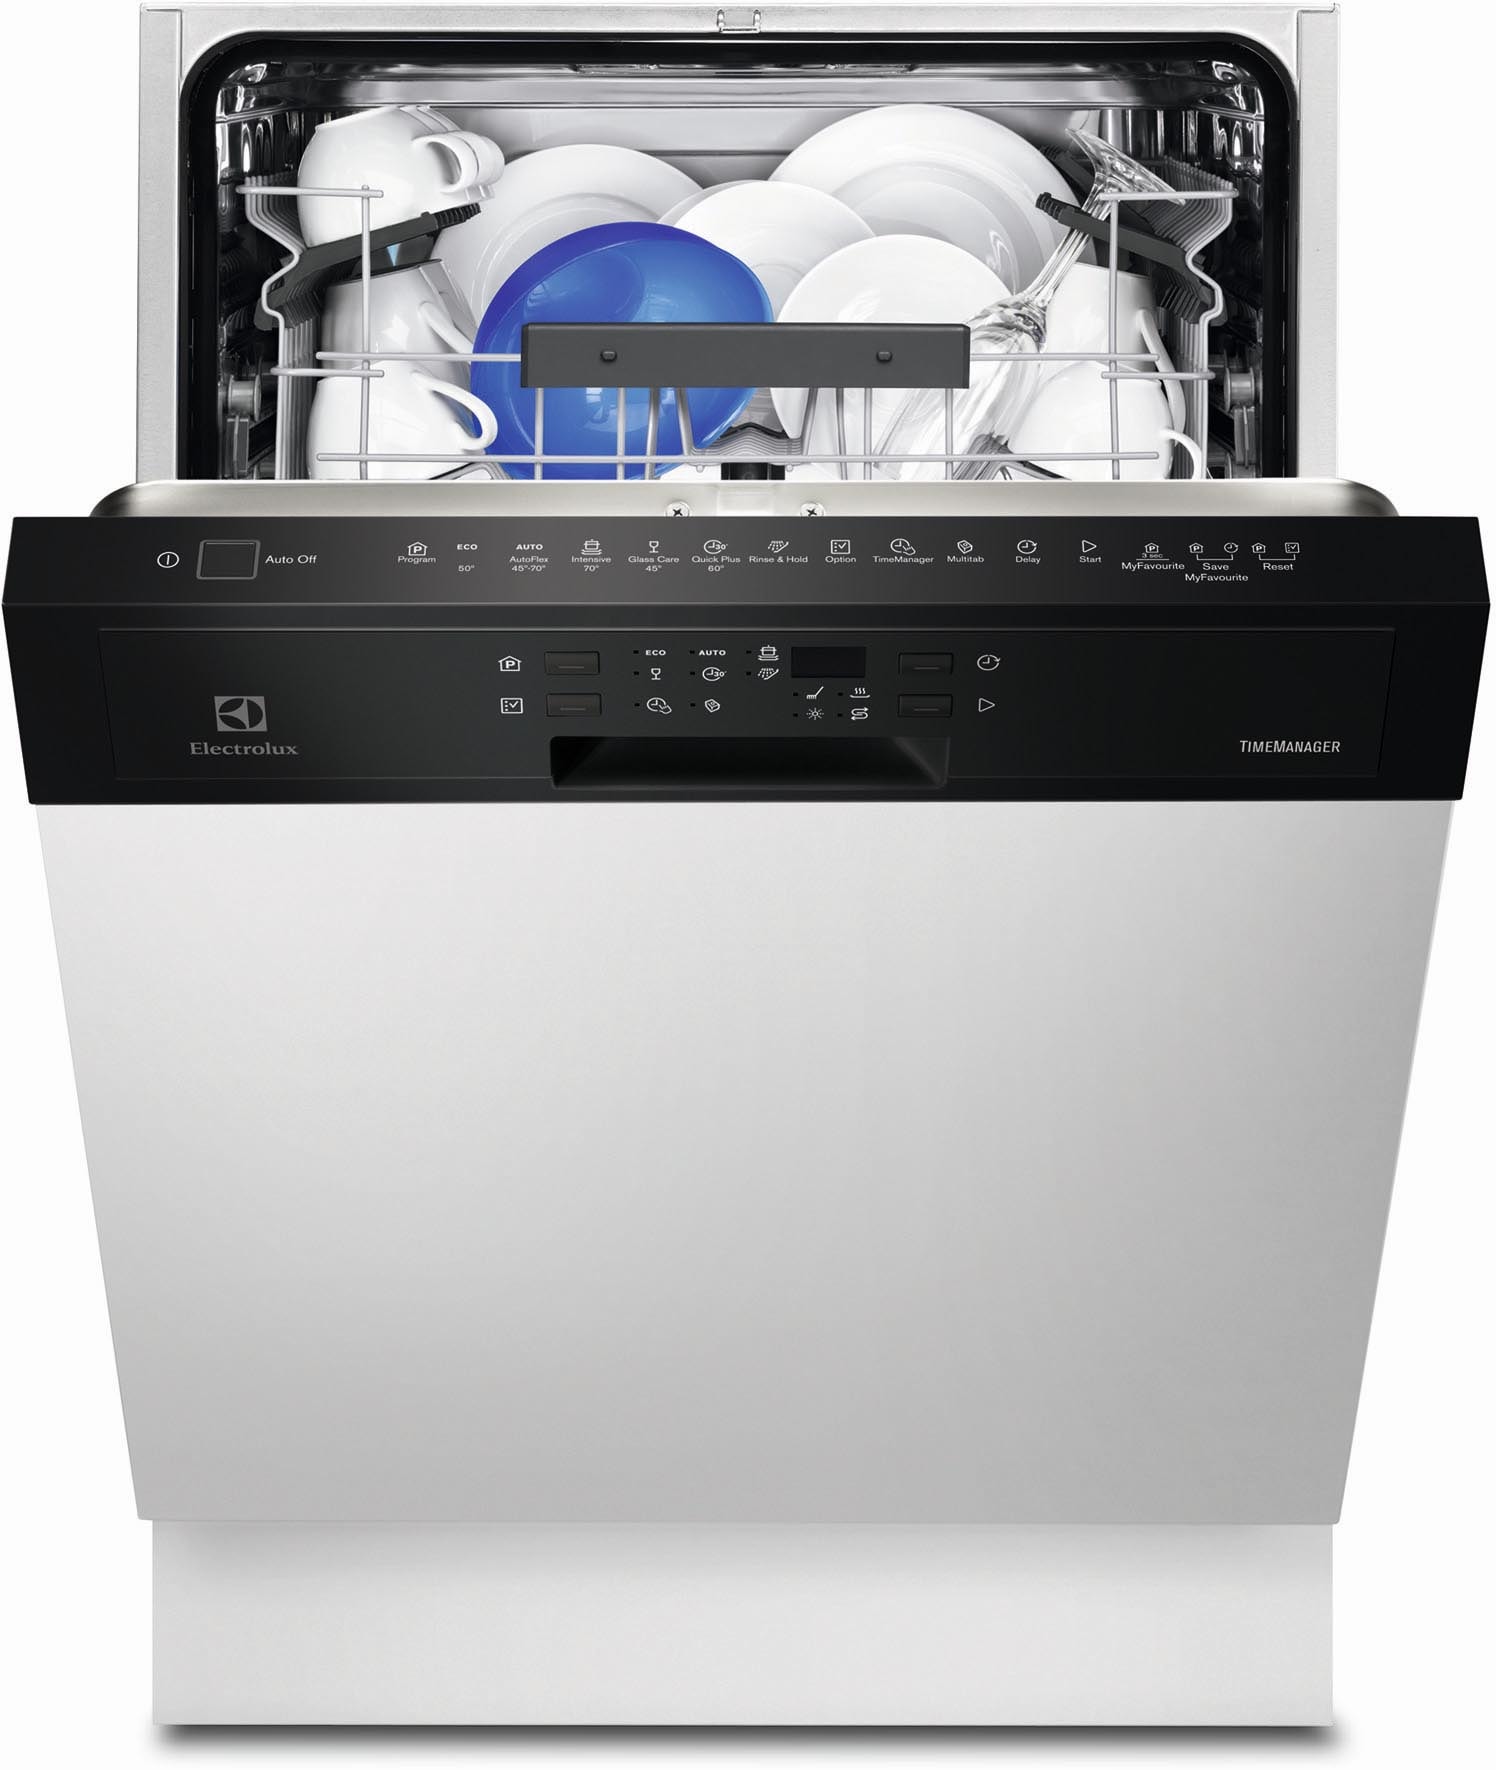 Lave vaisselle ELECTROLUX intégrable, 13 couverts, 44 db, classe  énergétique A++